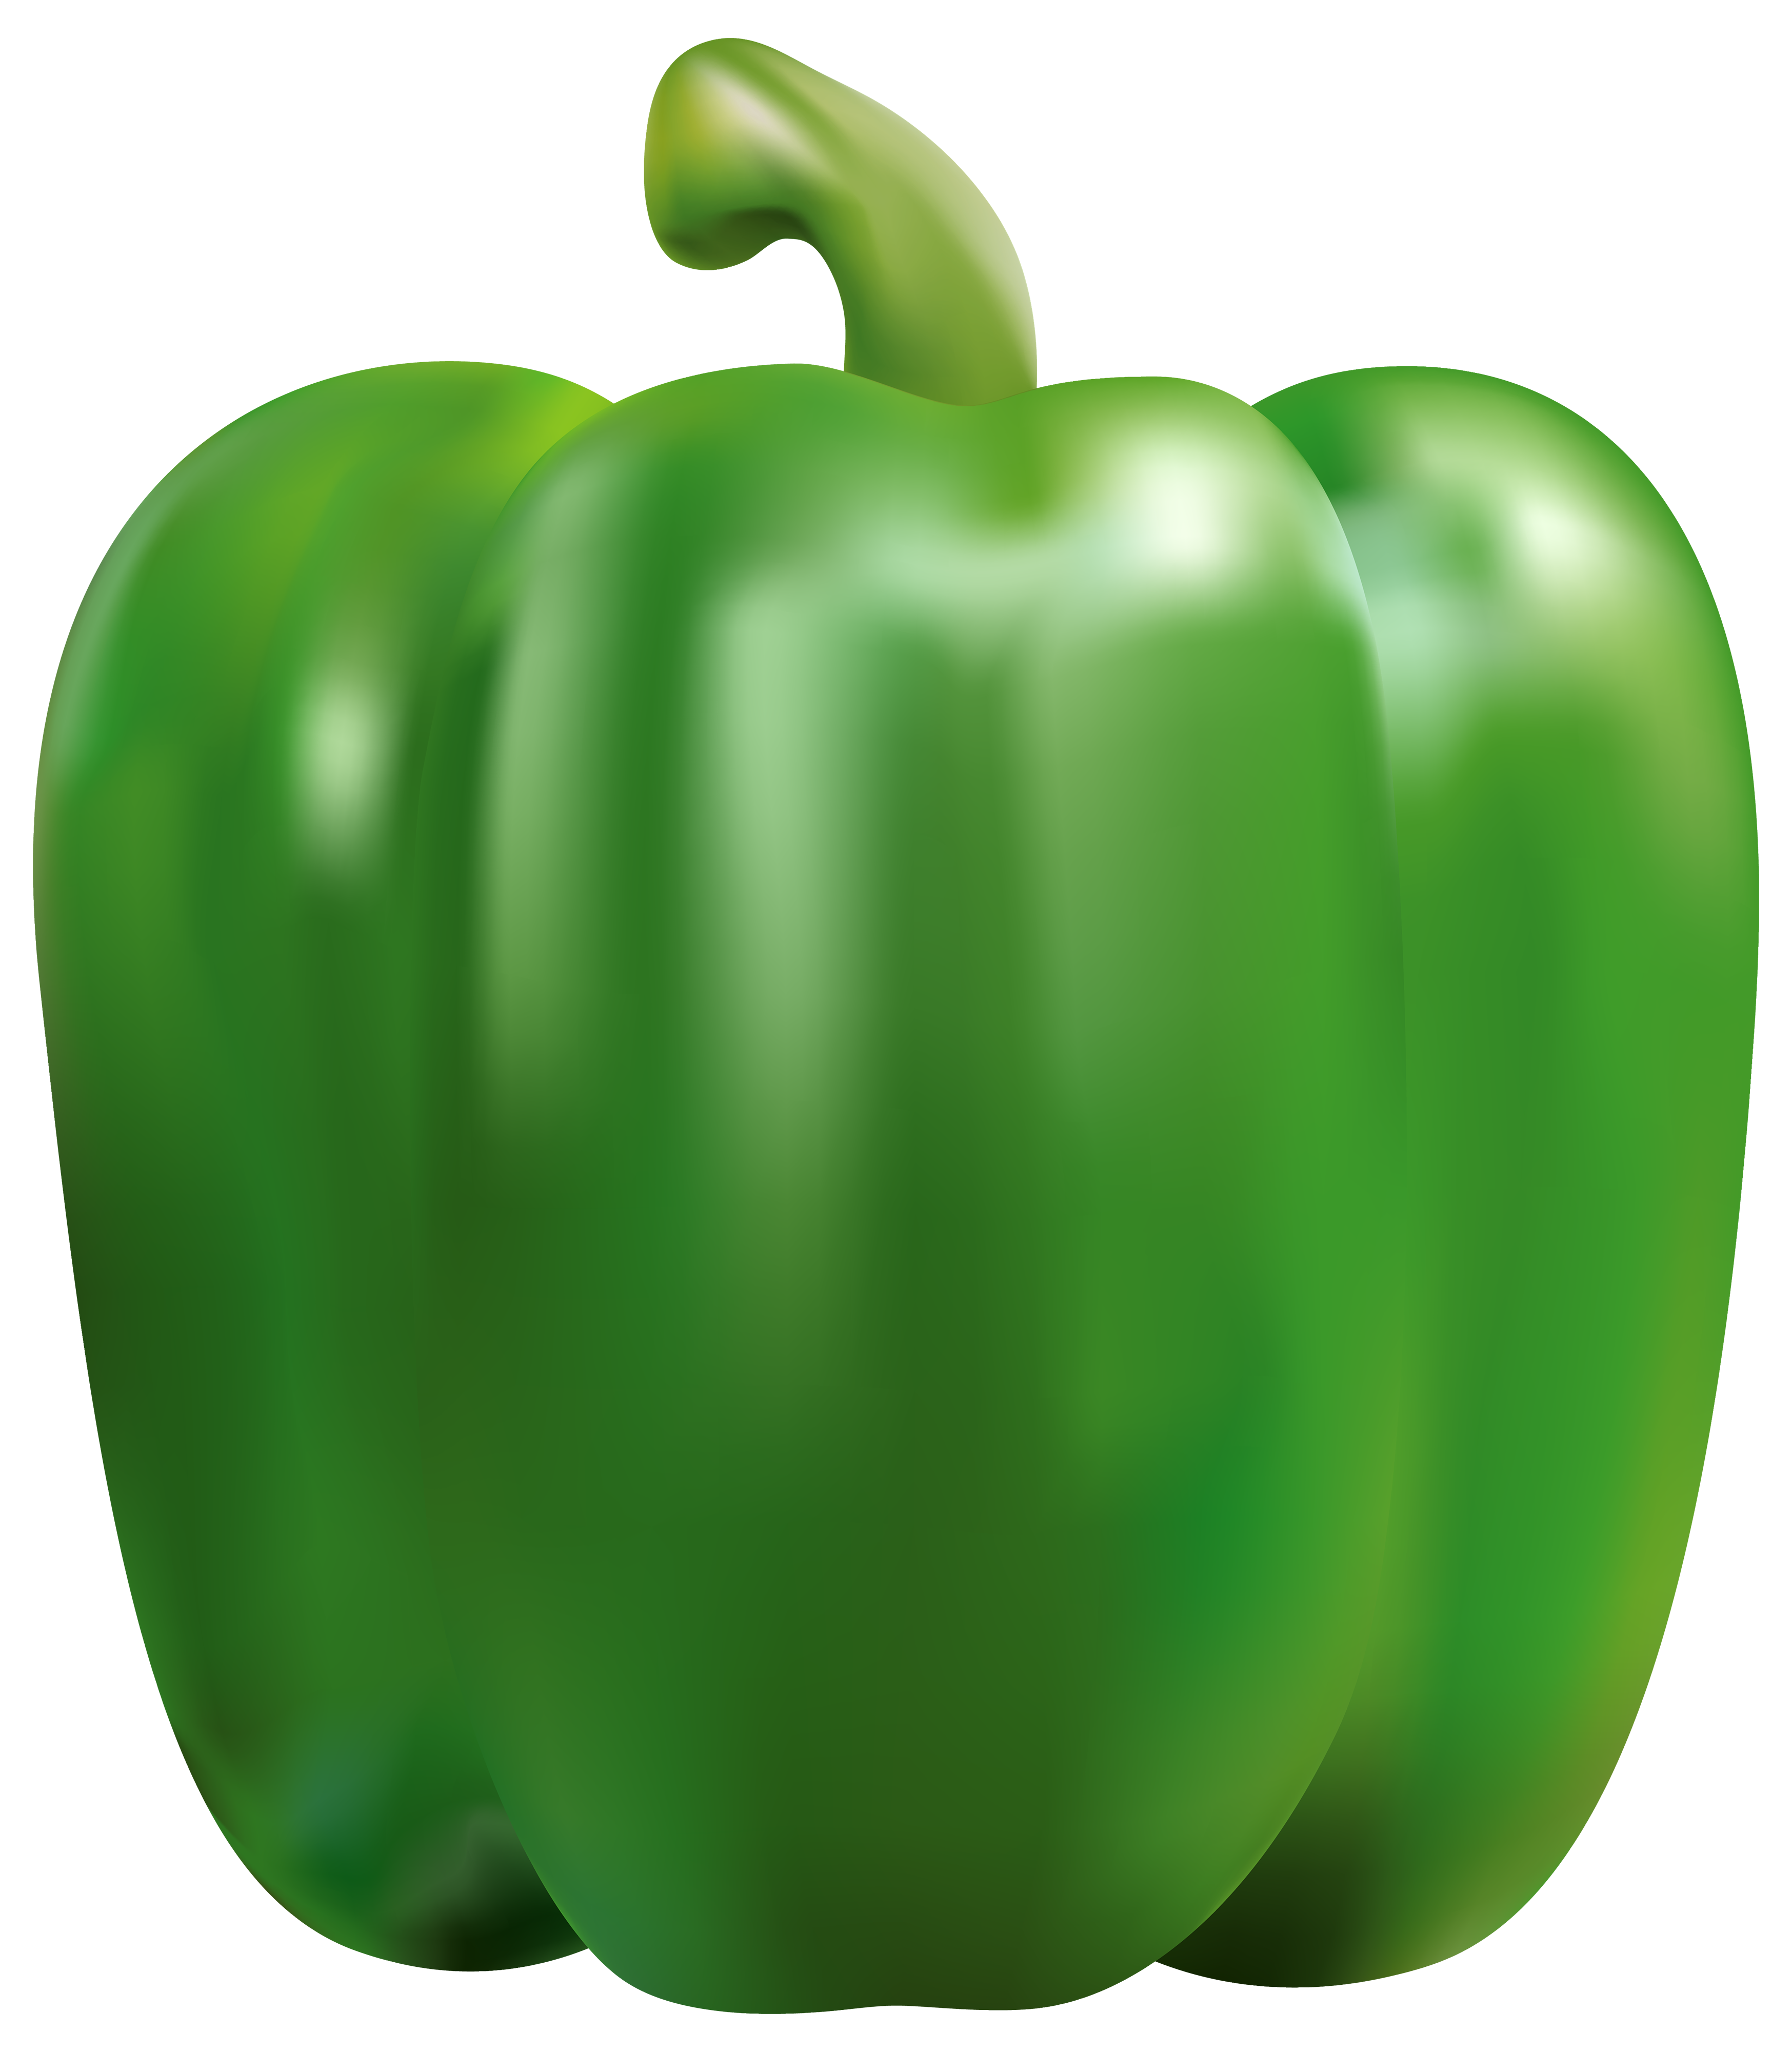 Картинка овощей по отдельности. Перец зеленый сладкий. Овощи по отдельности. Перец зелёный болгарский. Овощи на прозрачном фоне.